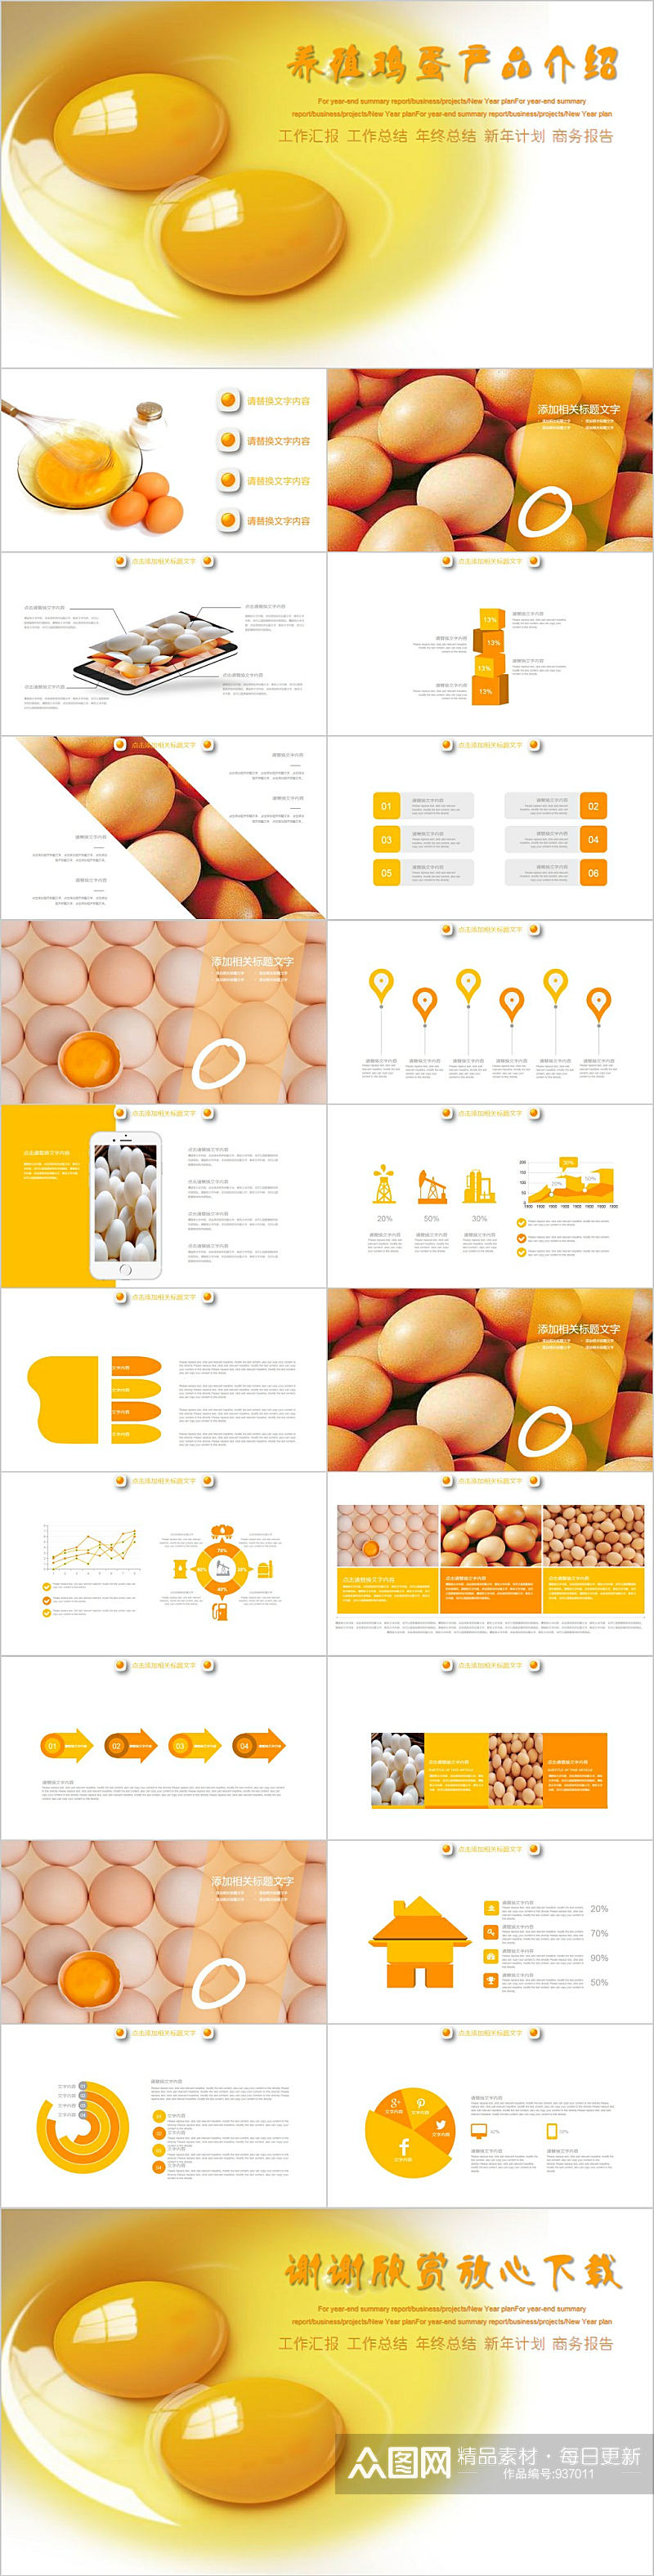 农产品养殖鸡蛋产品介绍PPT模板素材